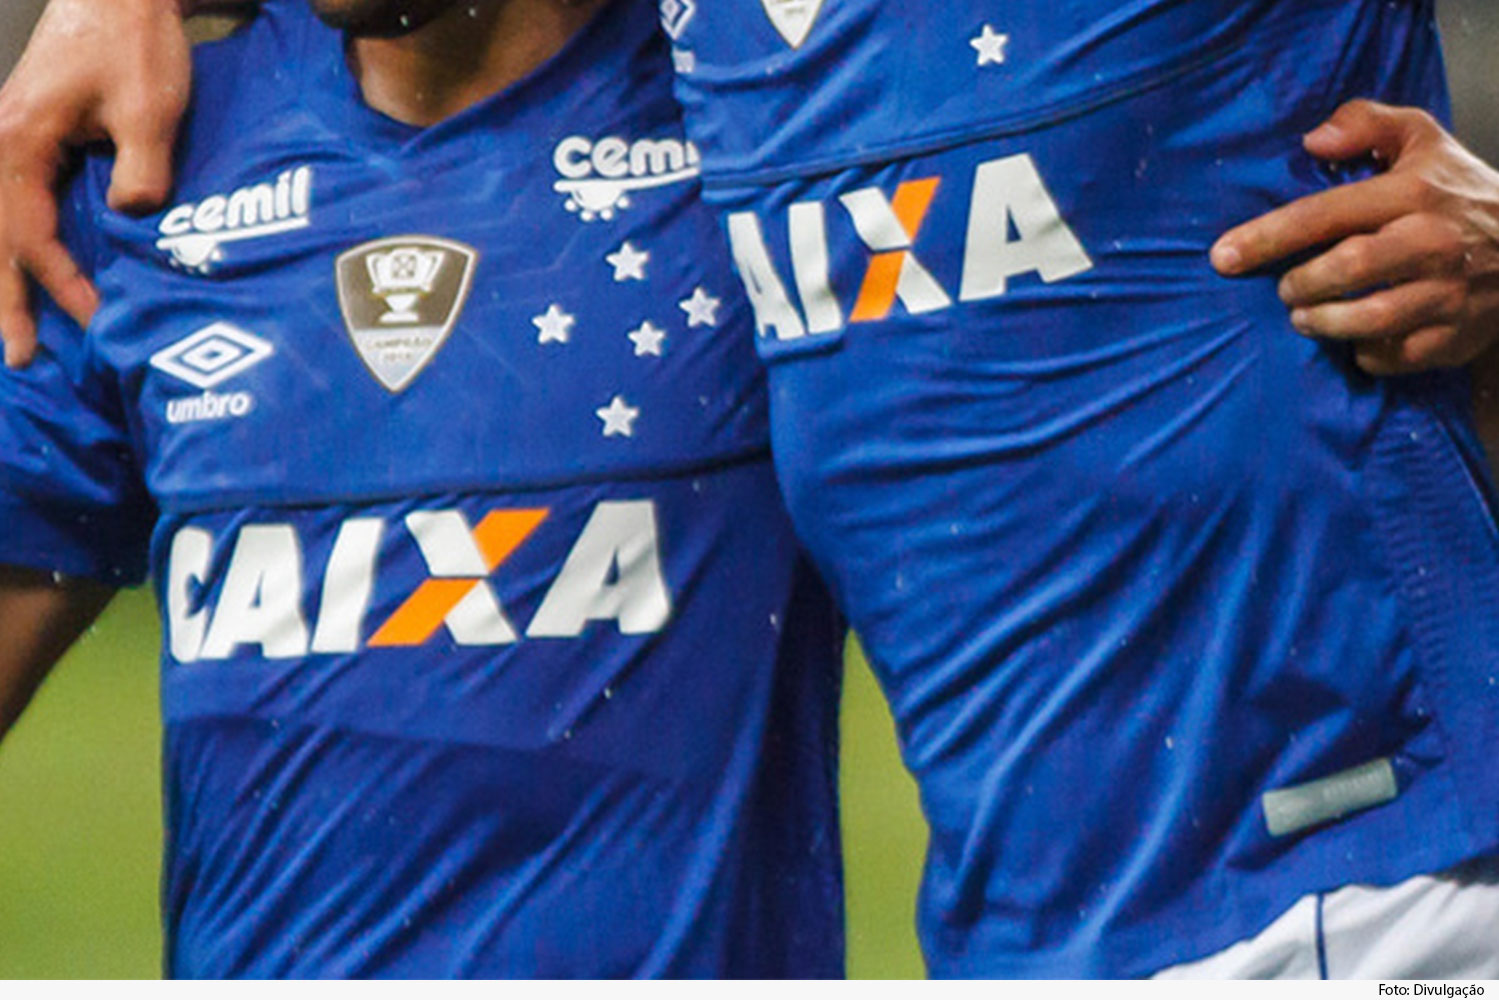 Dois jogadores abraçados, usam camisa azul do time Cruzeiro Esporte Clube